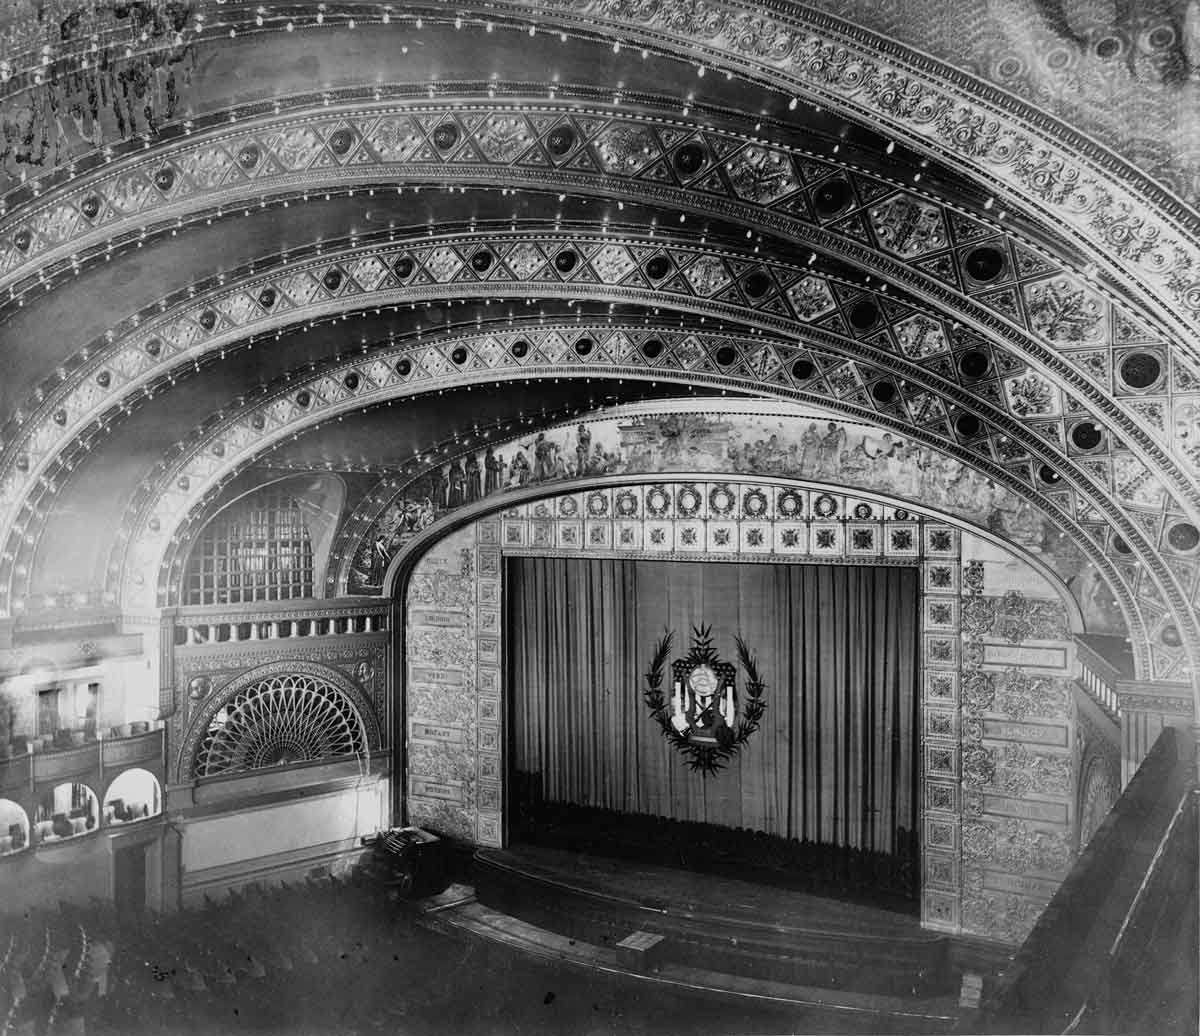 Chicago Auditorium Building